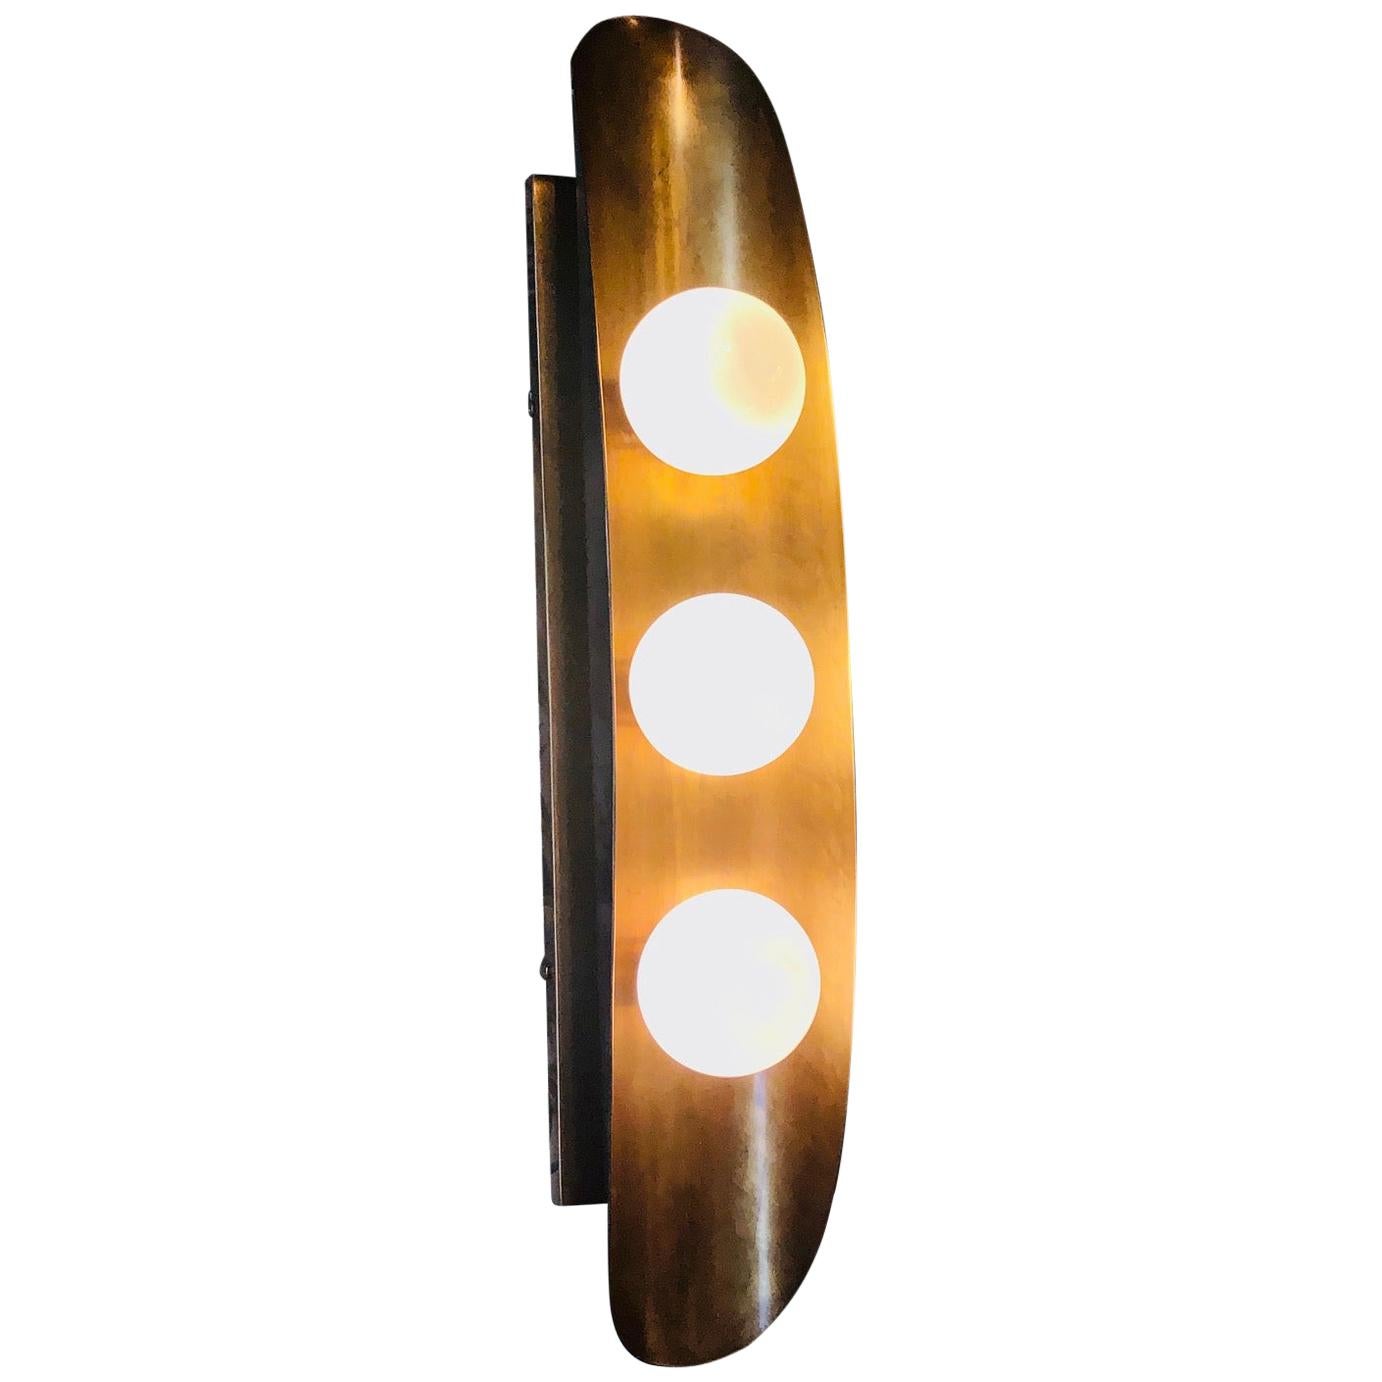 Hopper 3-Bulb Sconce Light Fixture by Martyn Lawrence Bullard